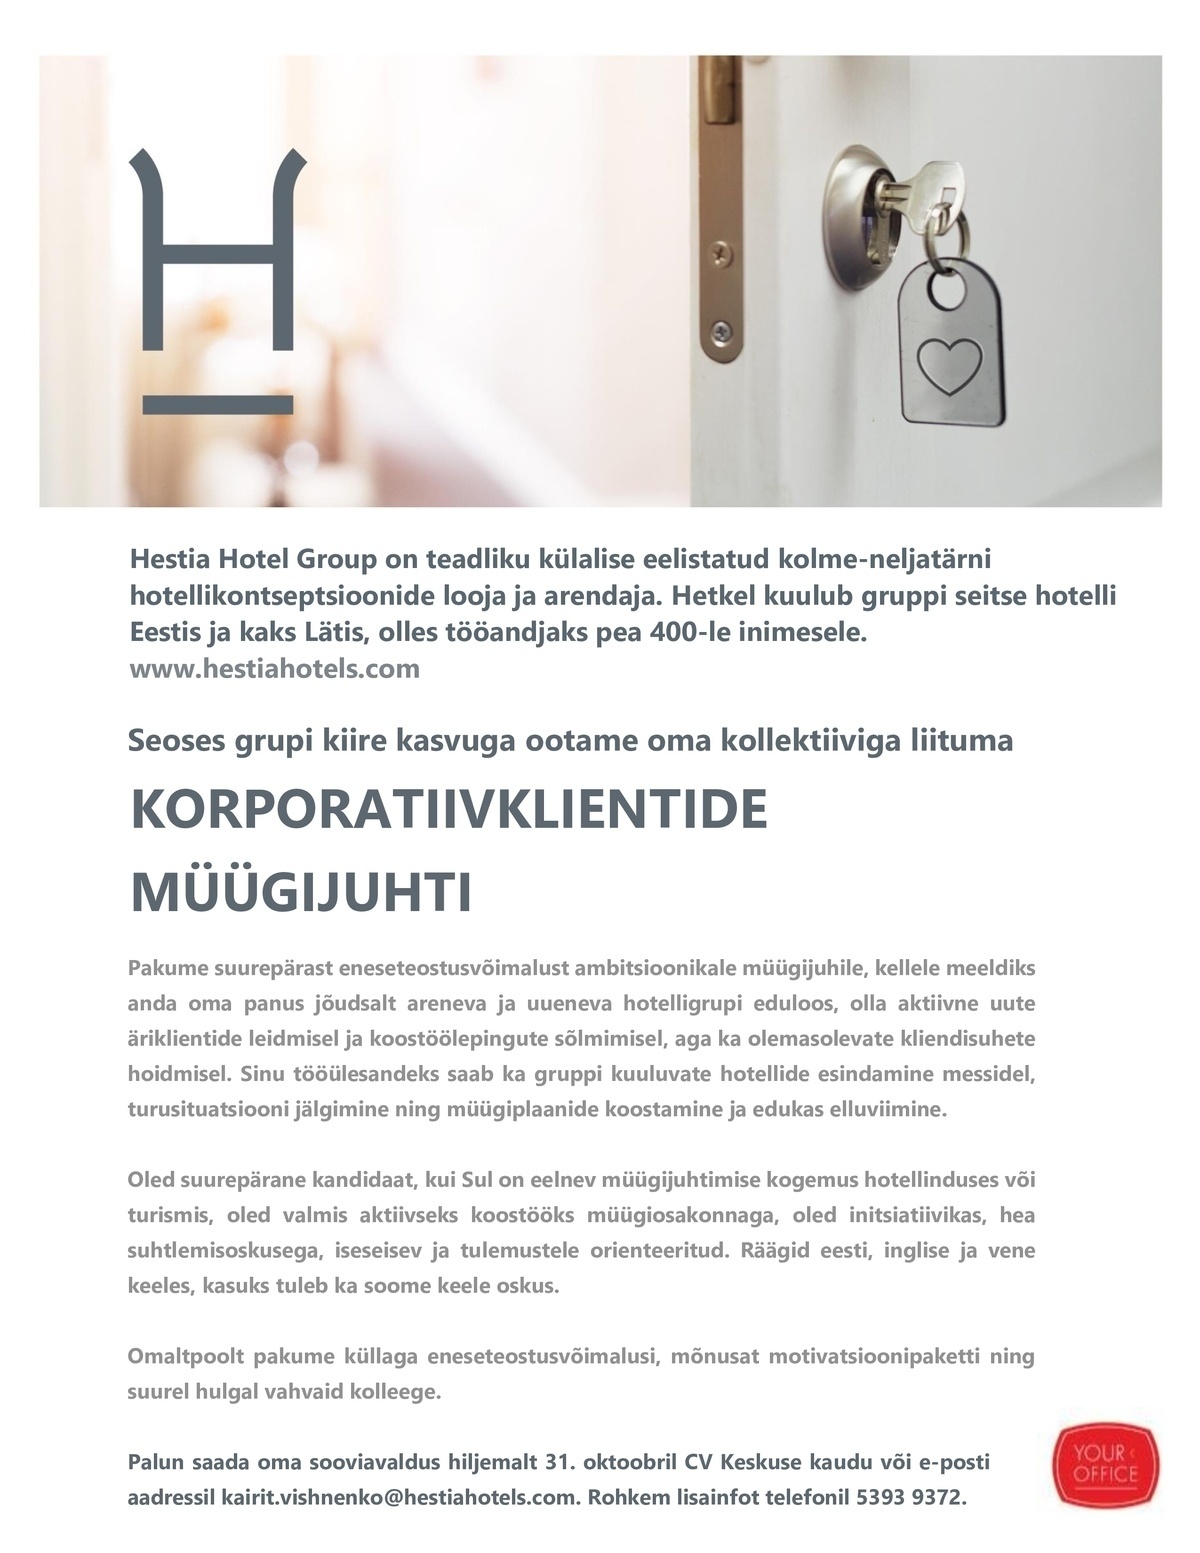 Hestia Hotel Group OÜ Korporatiivklientide müügijuht